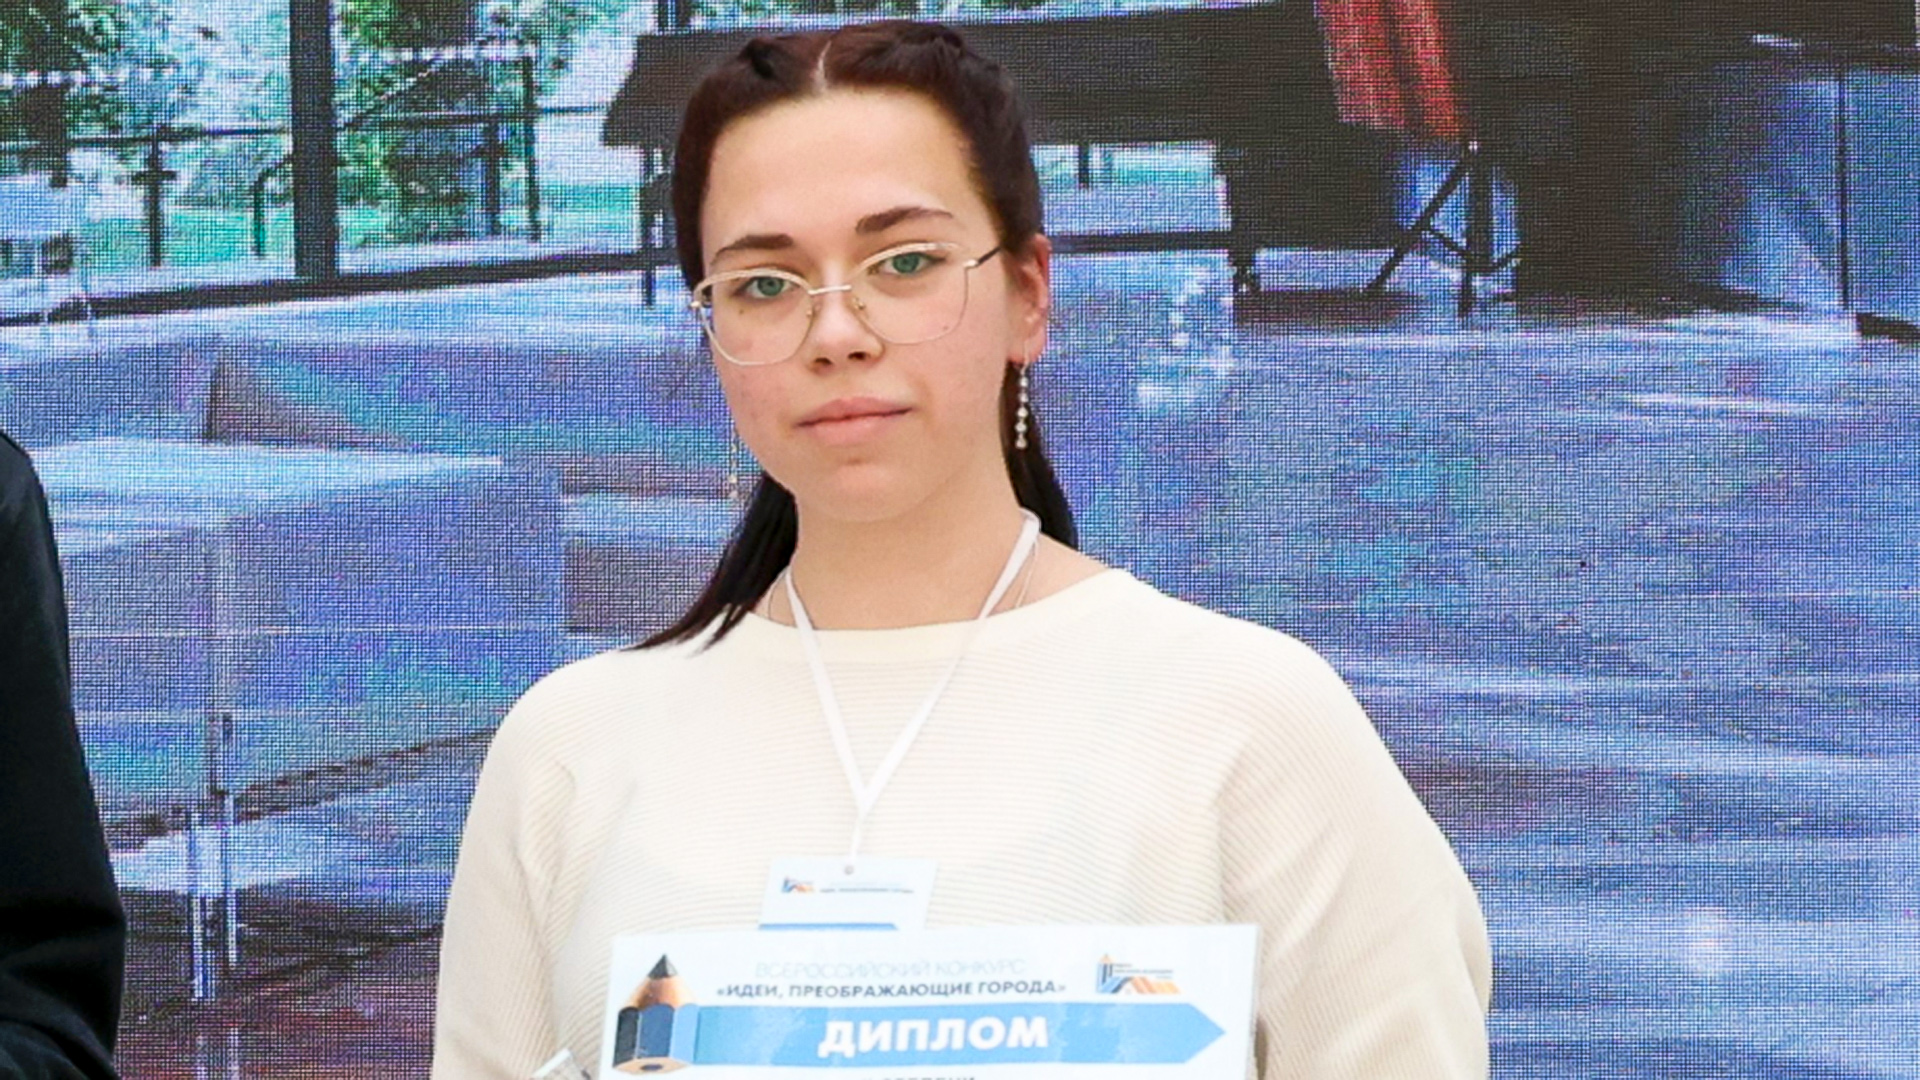 Комсомольчанка, разработавшая проект преображения школьной столовой, стала победительницей всероссийского конкурса «Идеи, преображающие города»